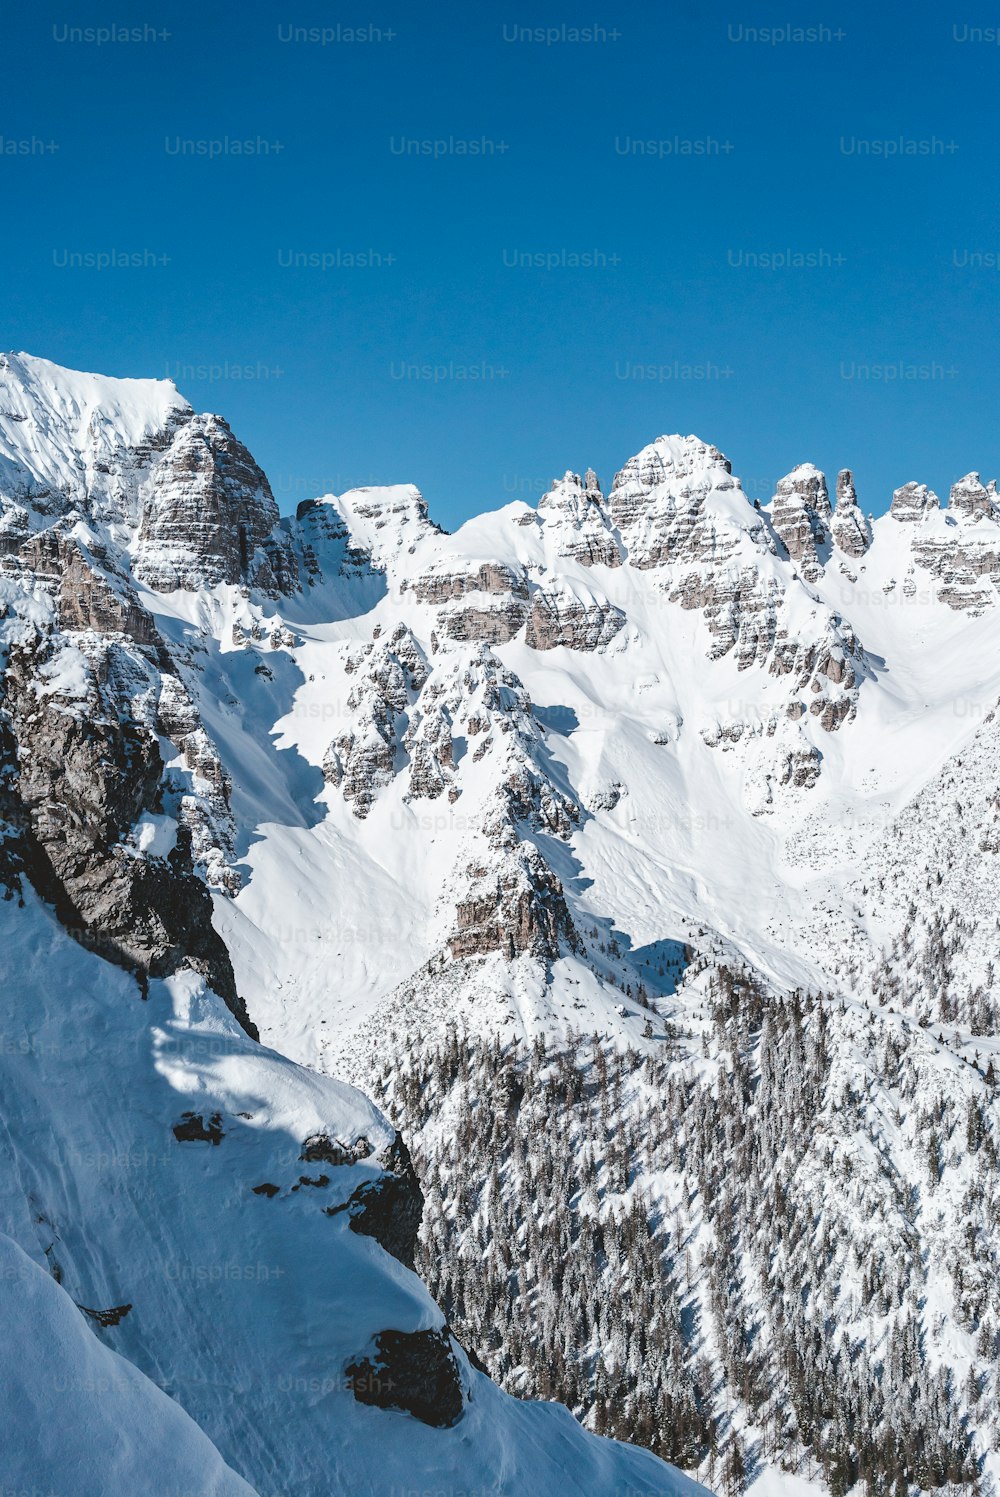 Un hombre montando esquís por la ladera de una montaña cubierta de nieve